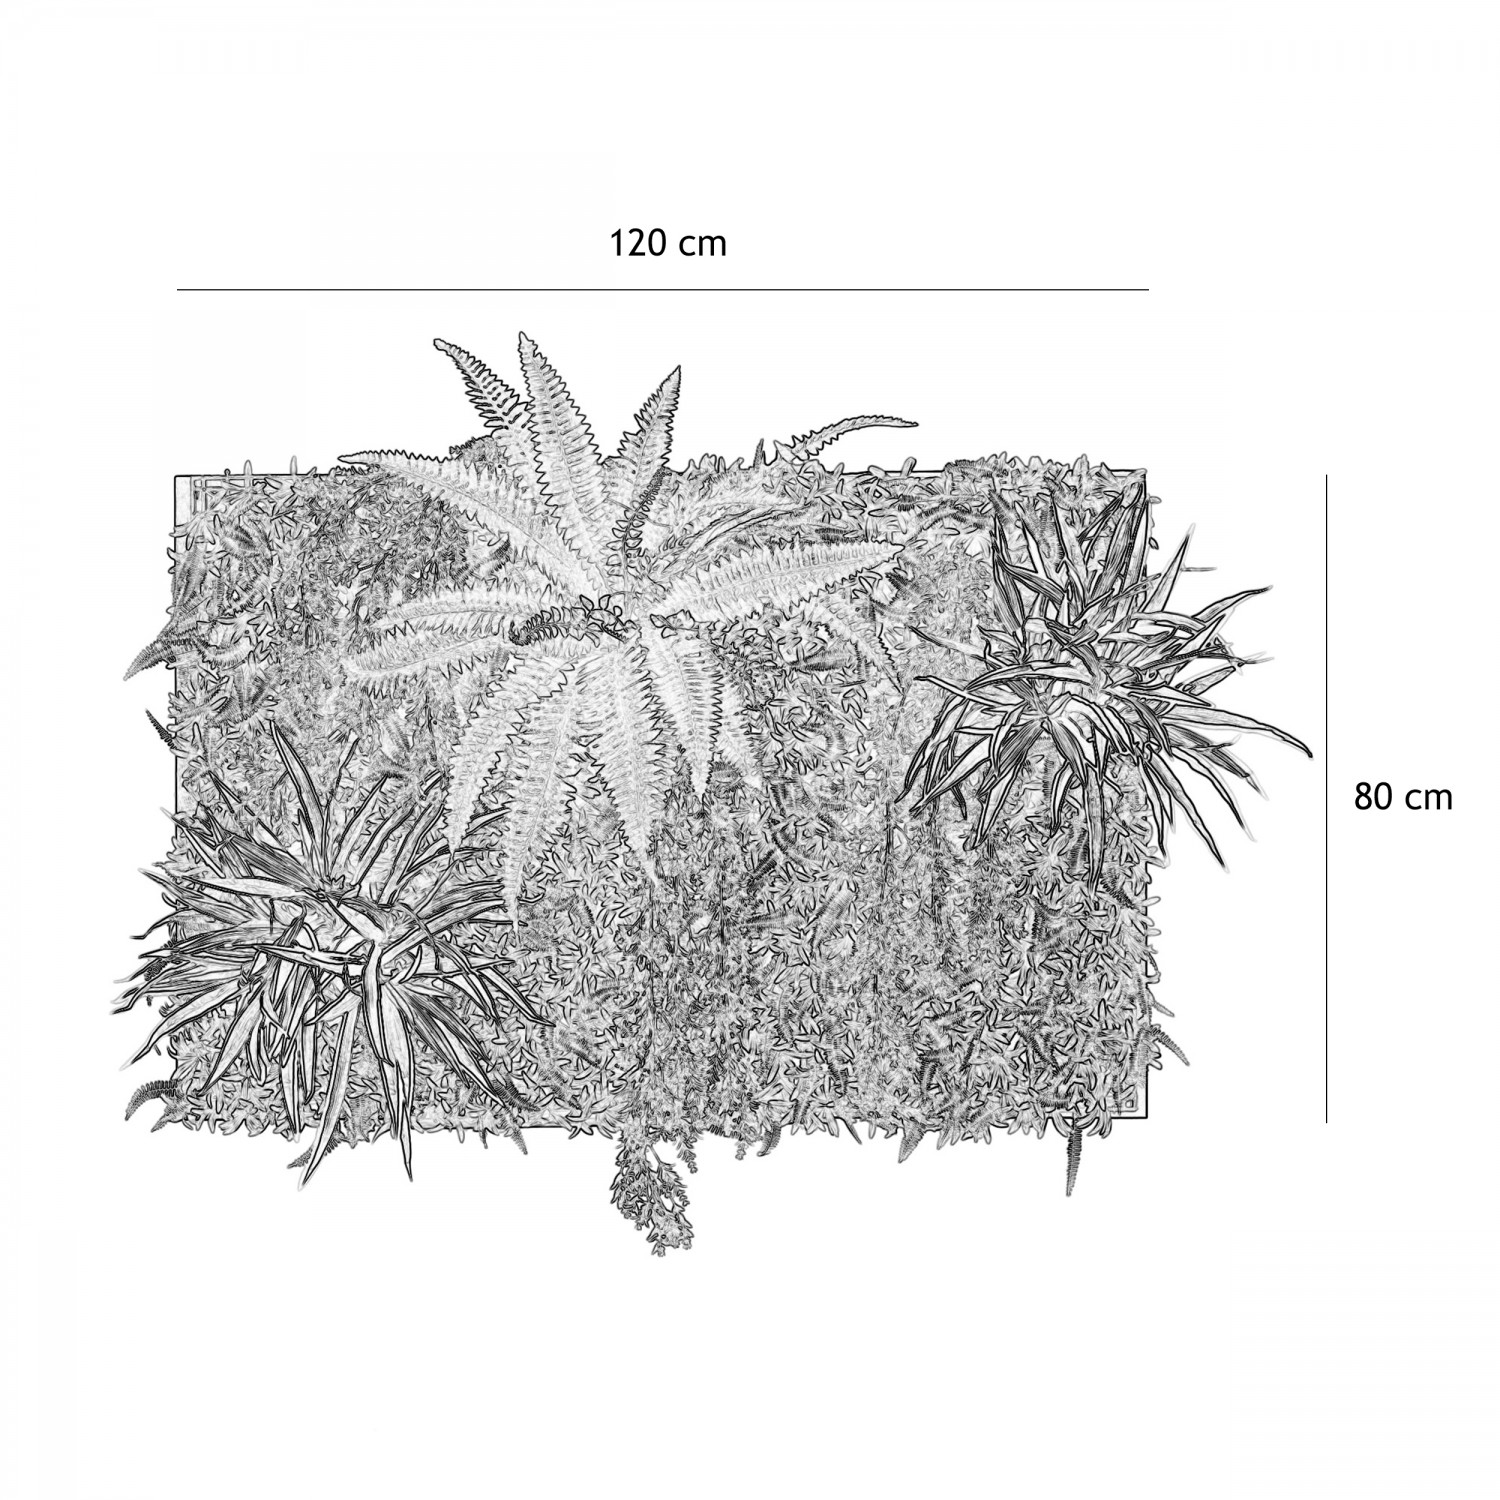 Mur végétal artificiel en kit DIY 120x80cm graphique avec les dimensions